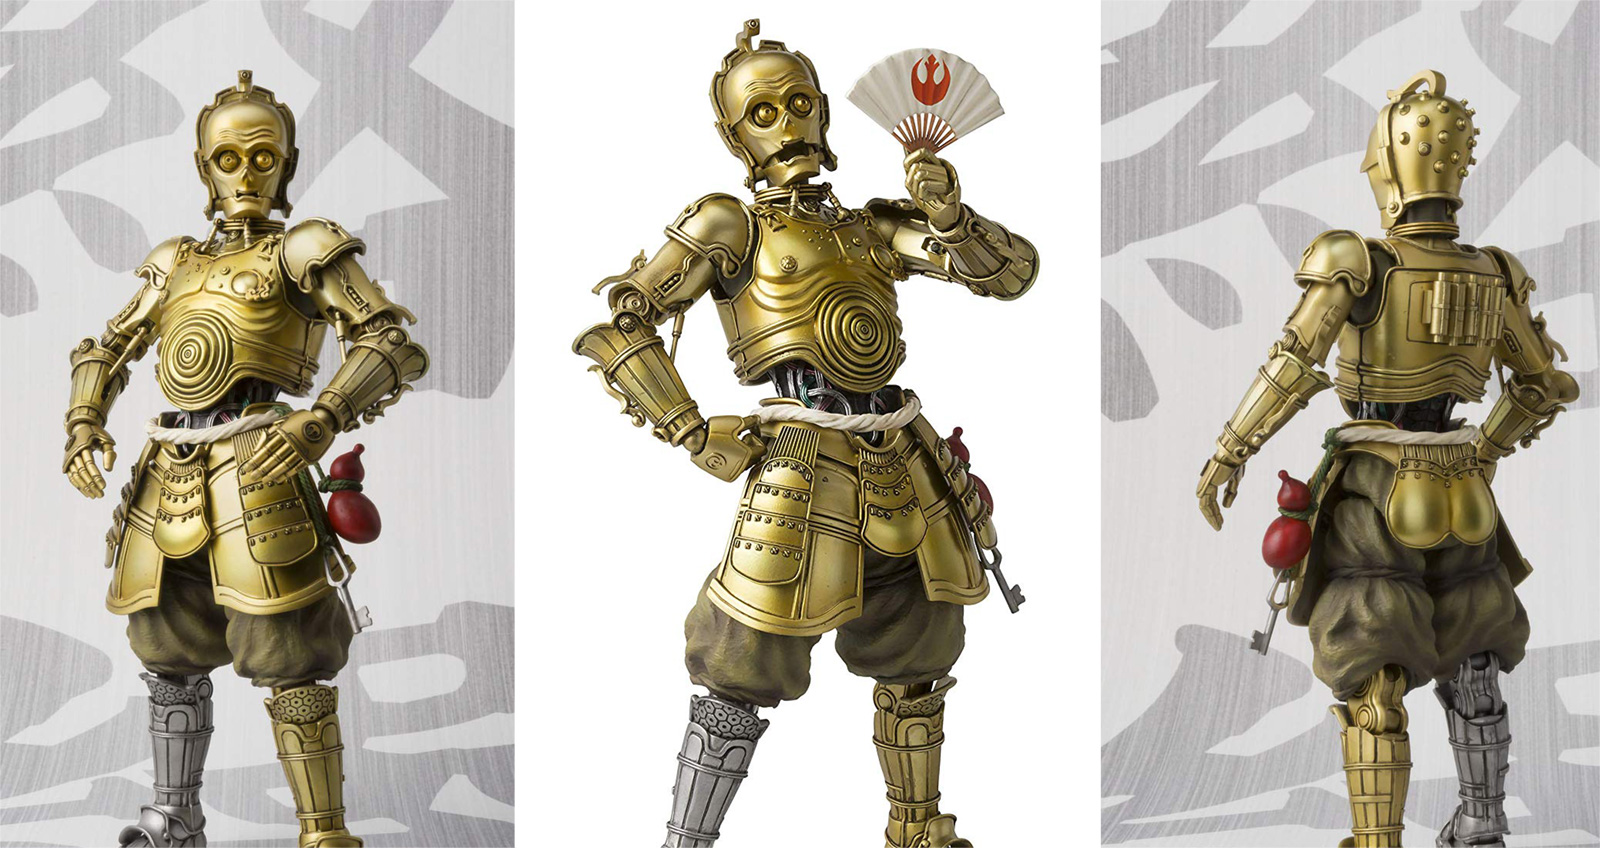 ちょんまげもお似合い♪スター・ウォーズ「C-3PO」が甲冑姿のフィギュアになった！ (2019年2月9日) - エキサイトニュース